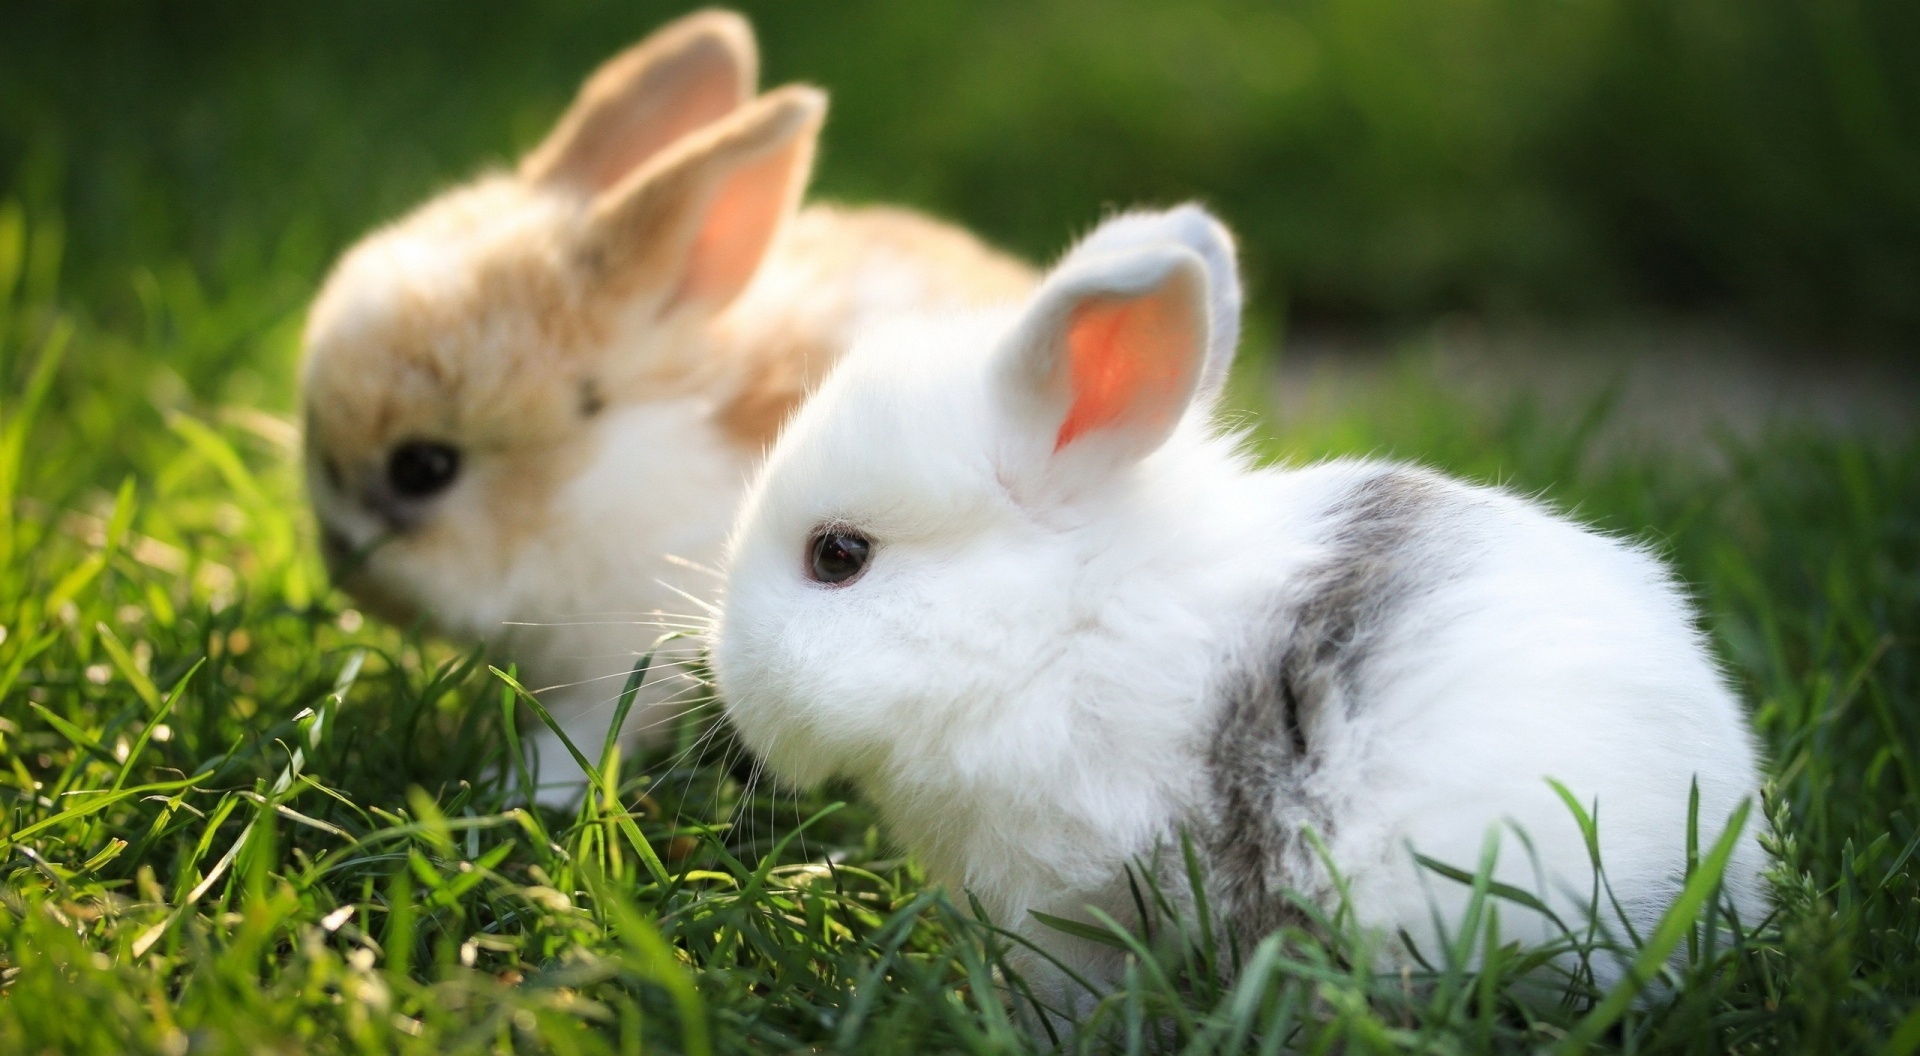 图库素材 - 艺术摄影 - 动物 图片信息简介:草地上可爱的两只小兔子